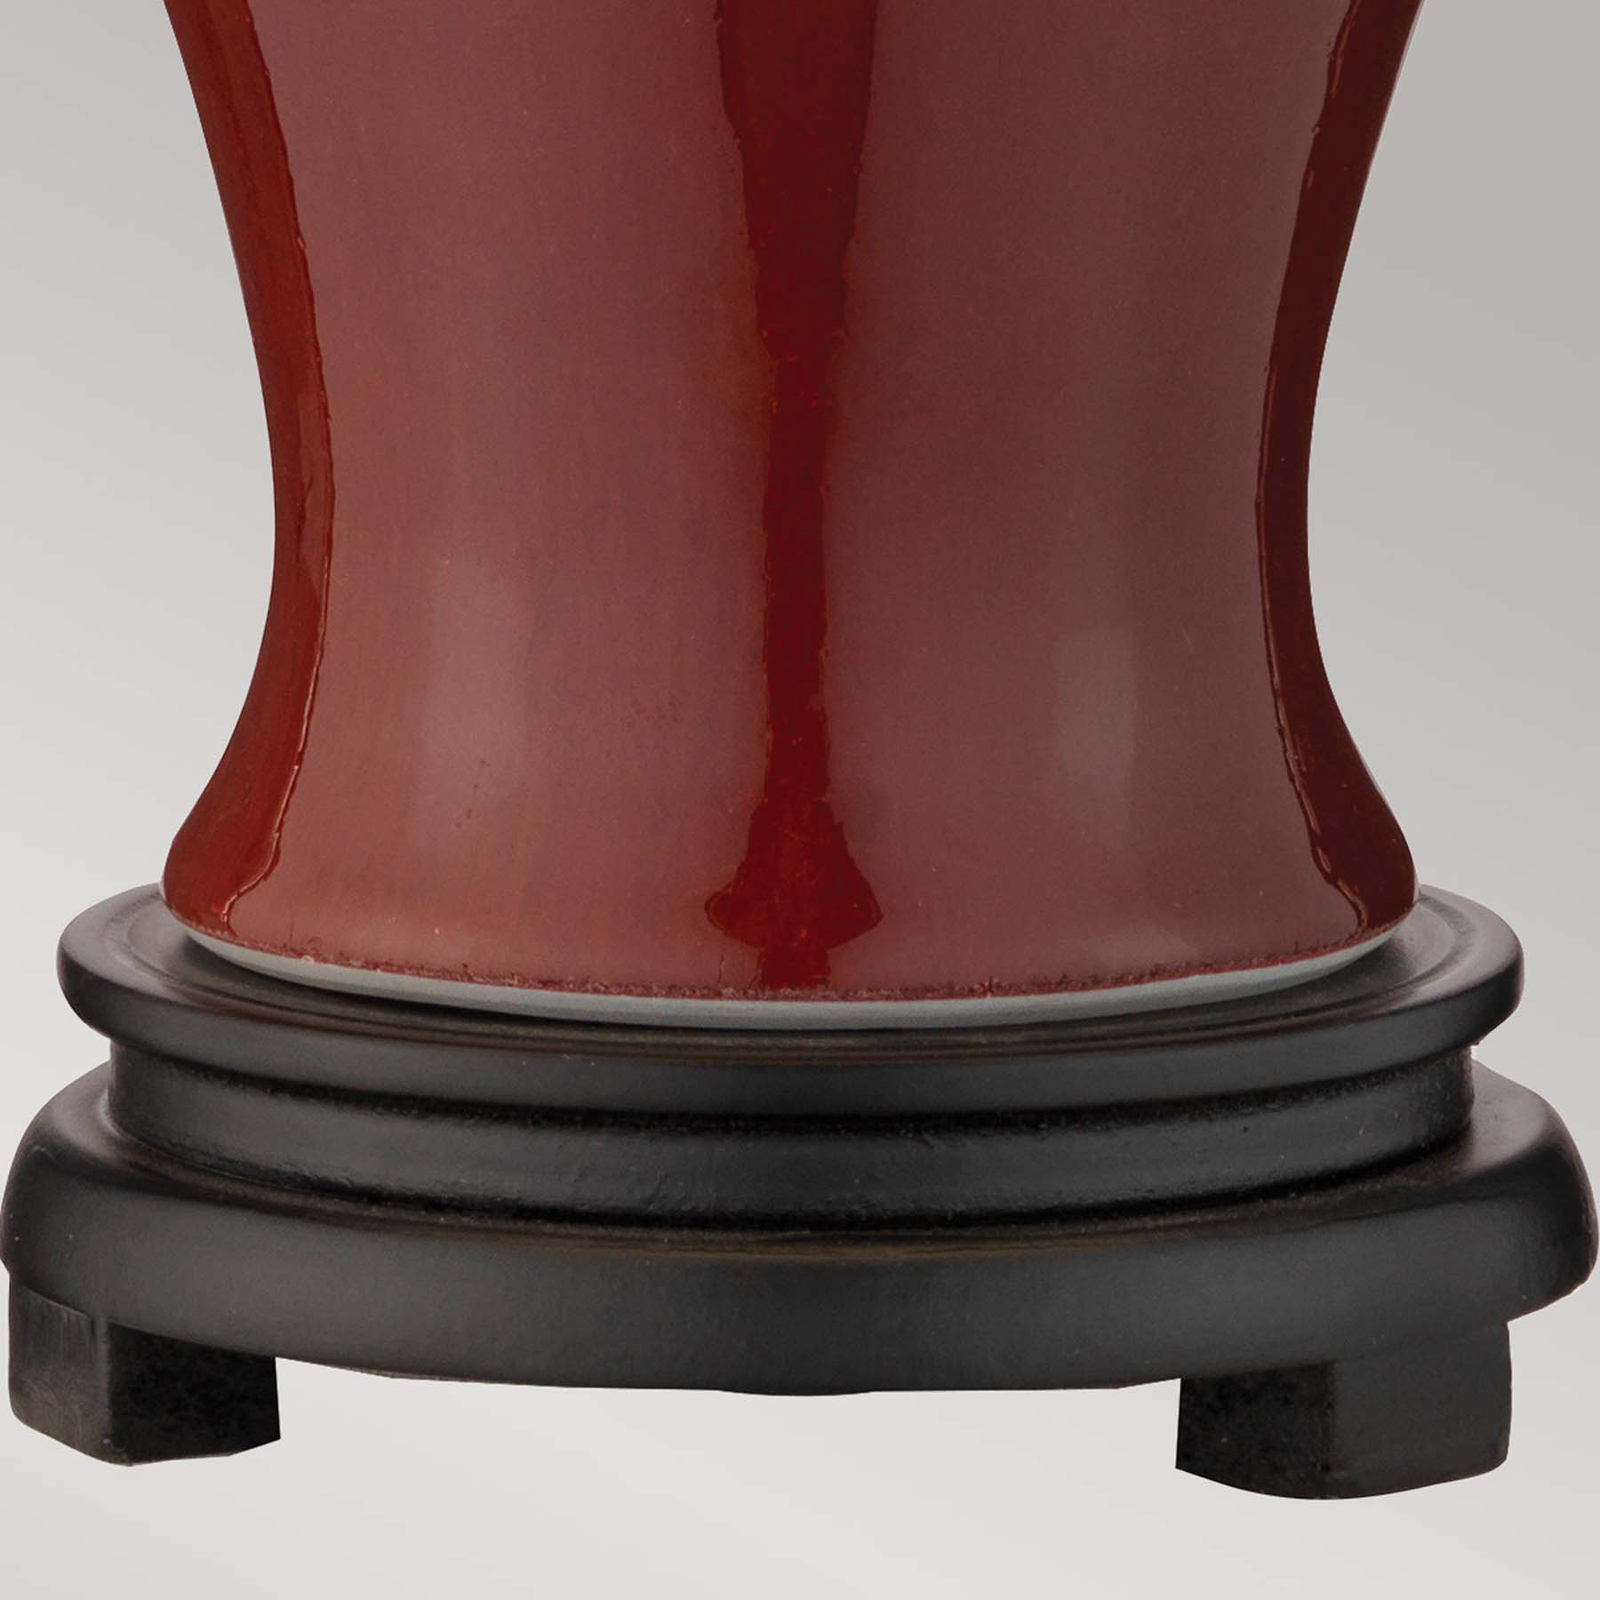 Malá stolní lampa Majin s červeným keramickým podstavcem